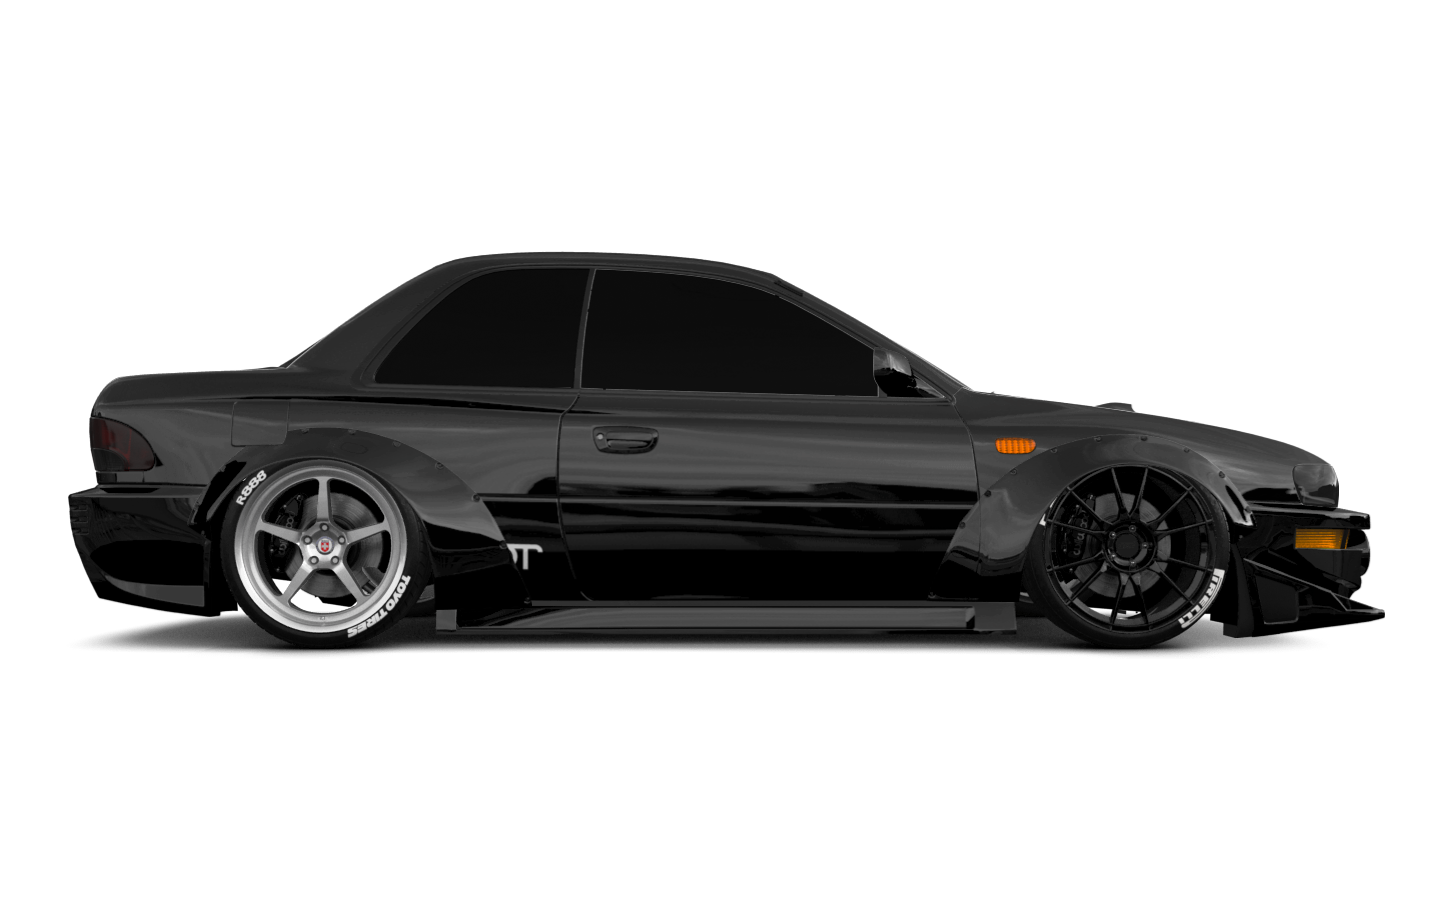 Subaru Impreza WRX STI 22B 2 Door Coupe 2000 tuning